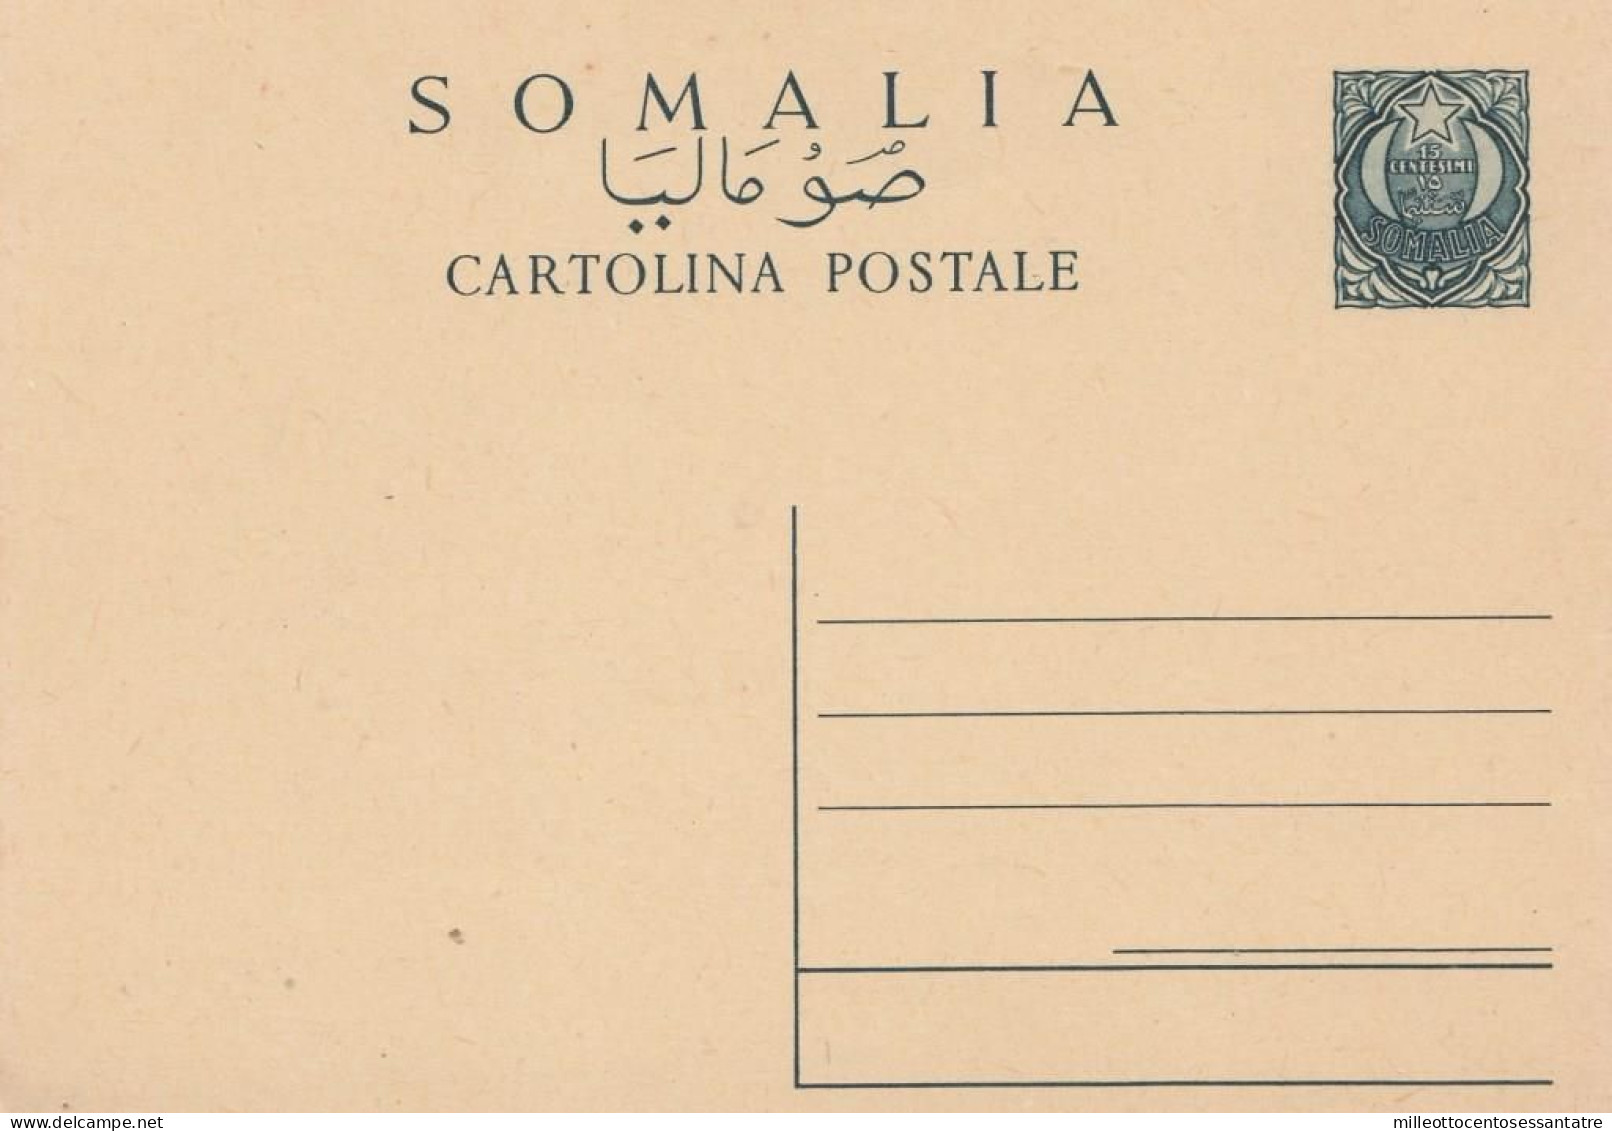 2478  - SOMALIA - Cartolina Postale - Da Cent. 15 Verde ( Stella E Mezzaluna) Del 1° Aprile 1950 - NUOVO - - Somalia